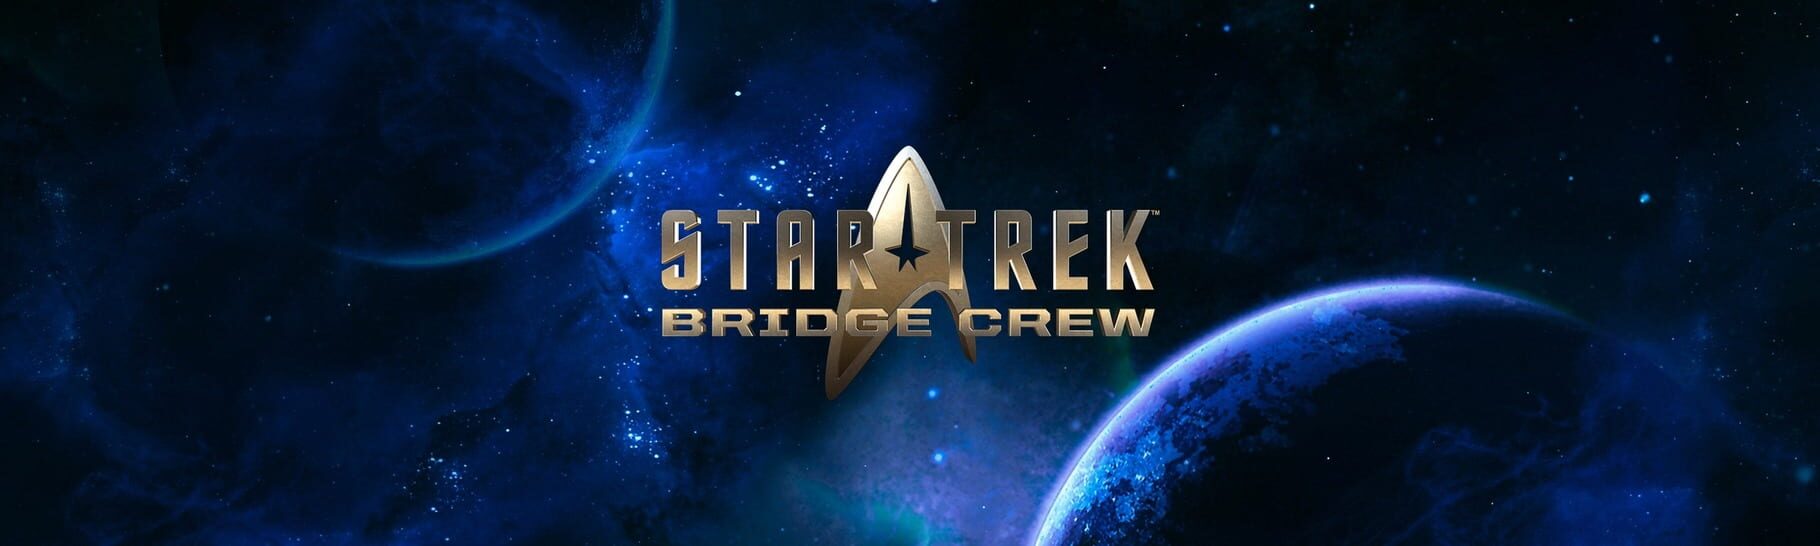 Arte - Star Trek: Bridge Crew